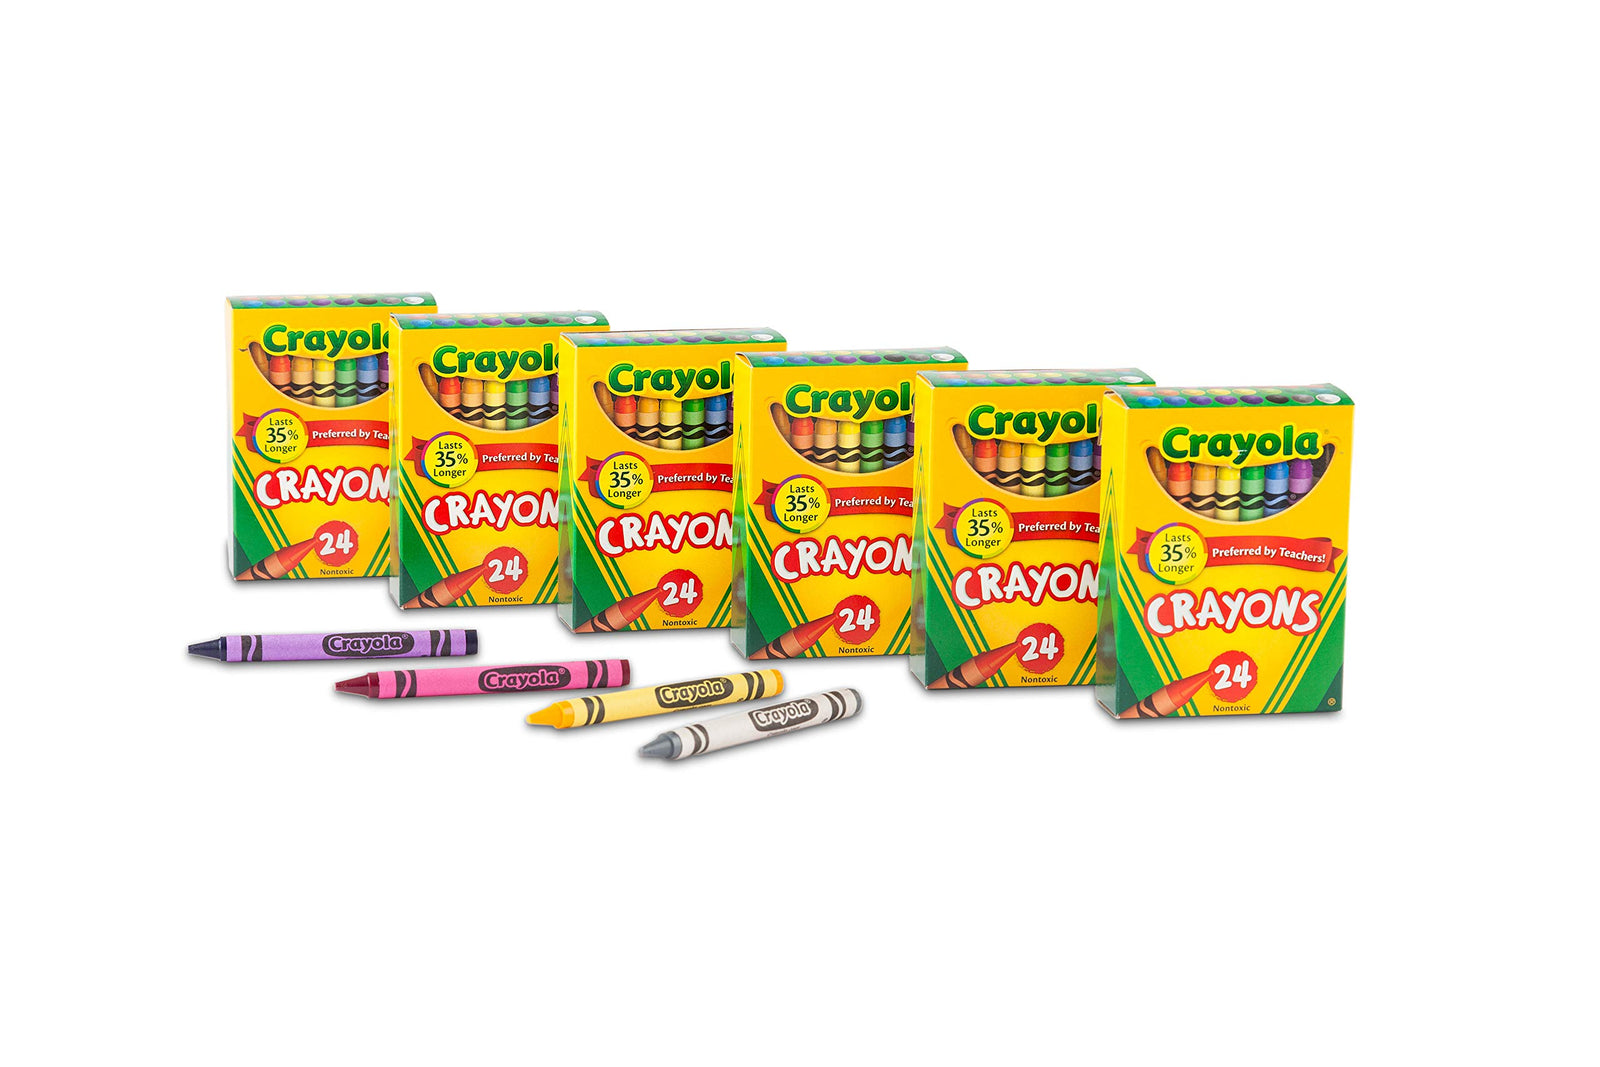 Crayola Crayons, School & Art Supplies, Bulk 6 Pack of 24Count, Assorted